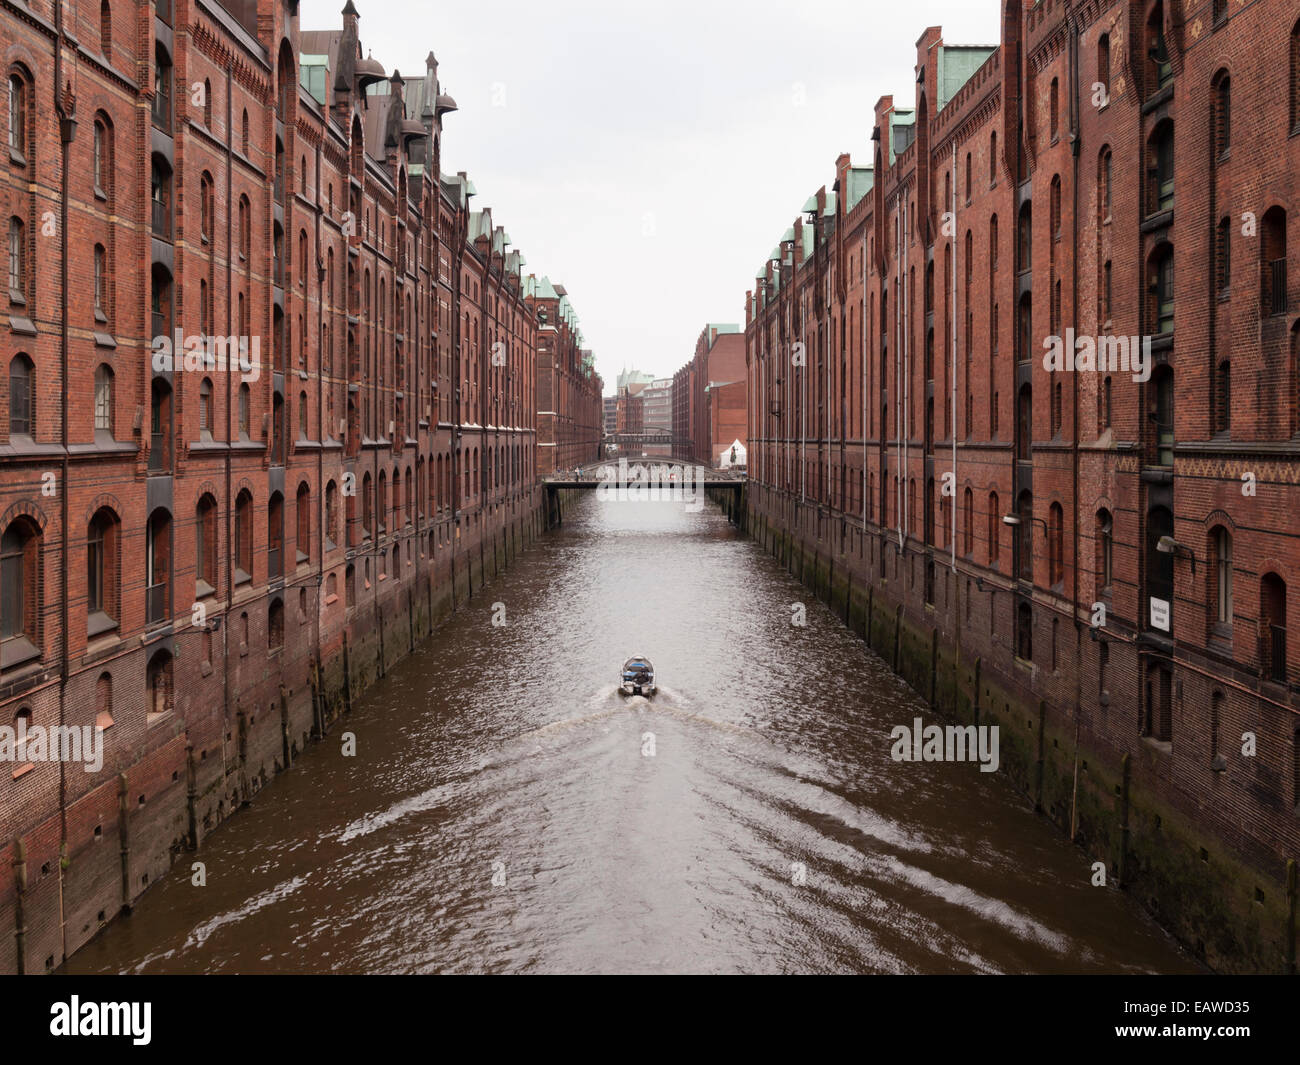 La histórica Speicherstadt (lit. "La ciudad de los almacenes') en Hamburgo, Alemania, el mayor distrito de almacenes en el mundo. Foto de stock